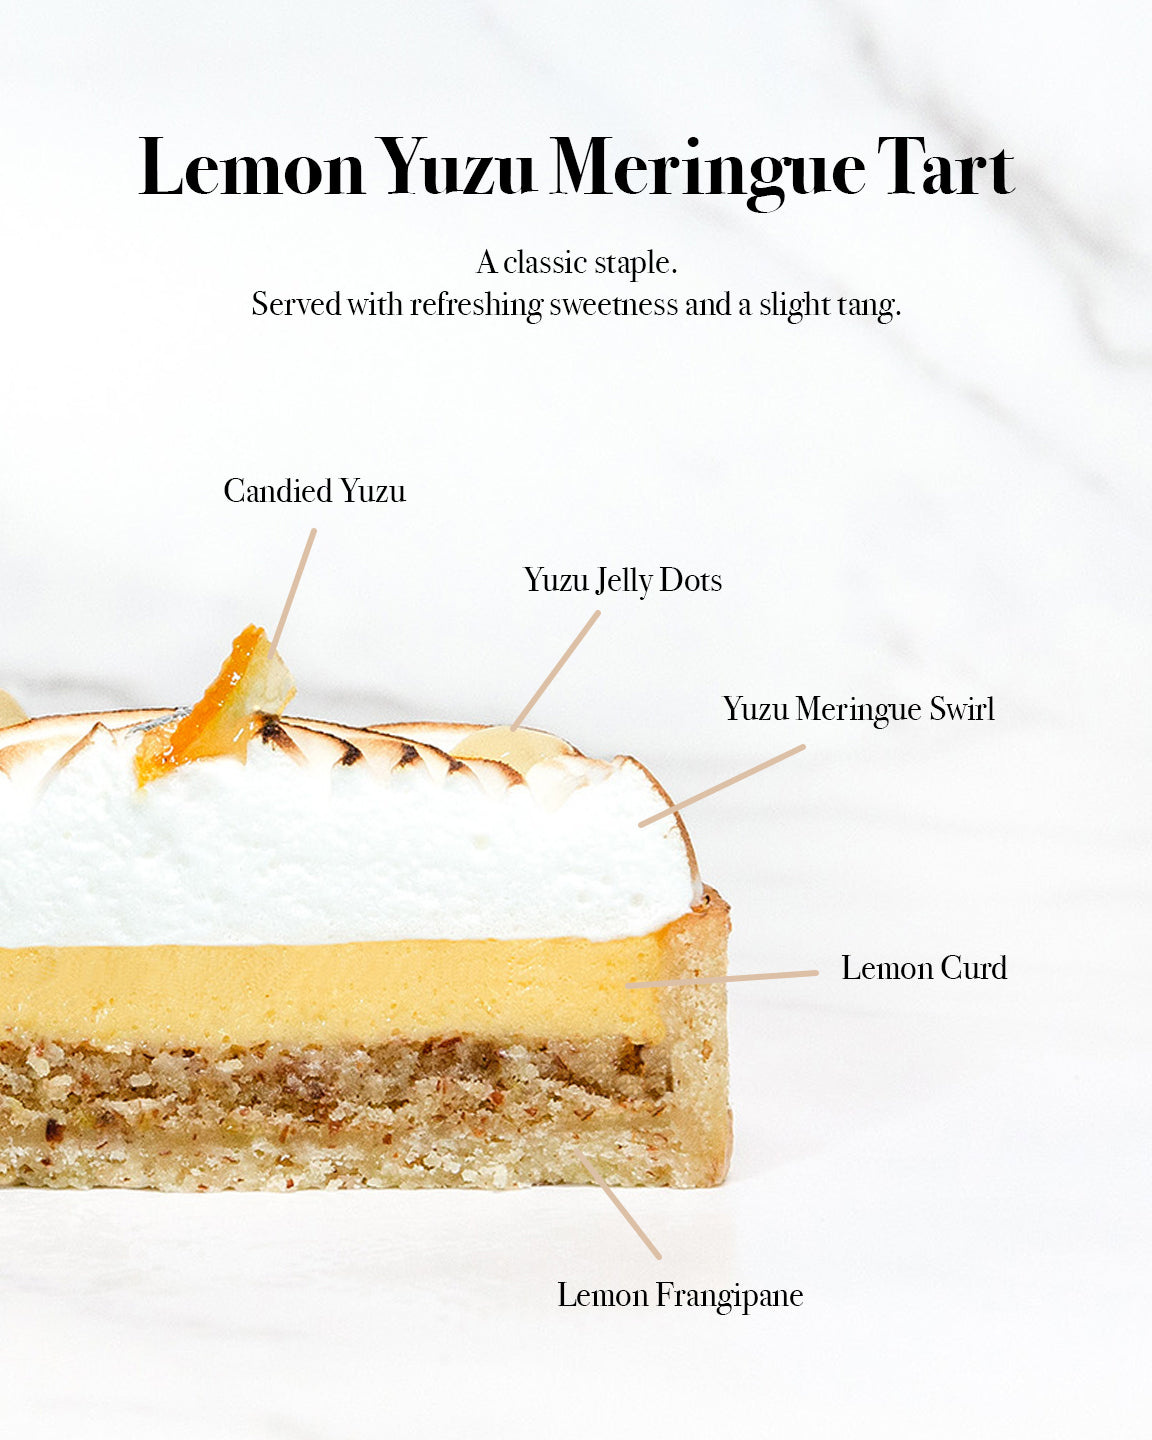 Lemon Yuzu Meringue Tart